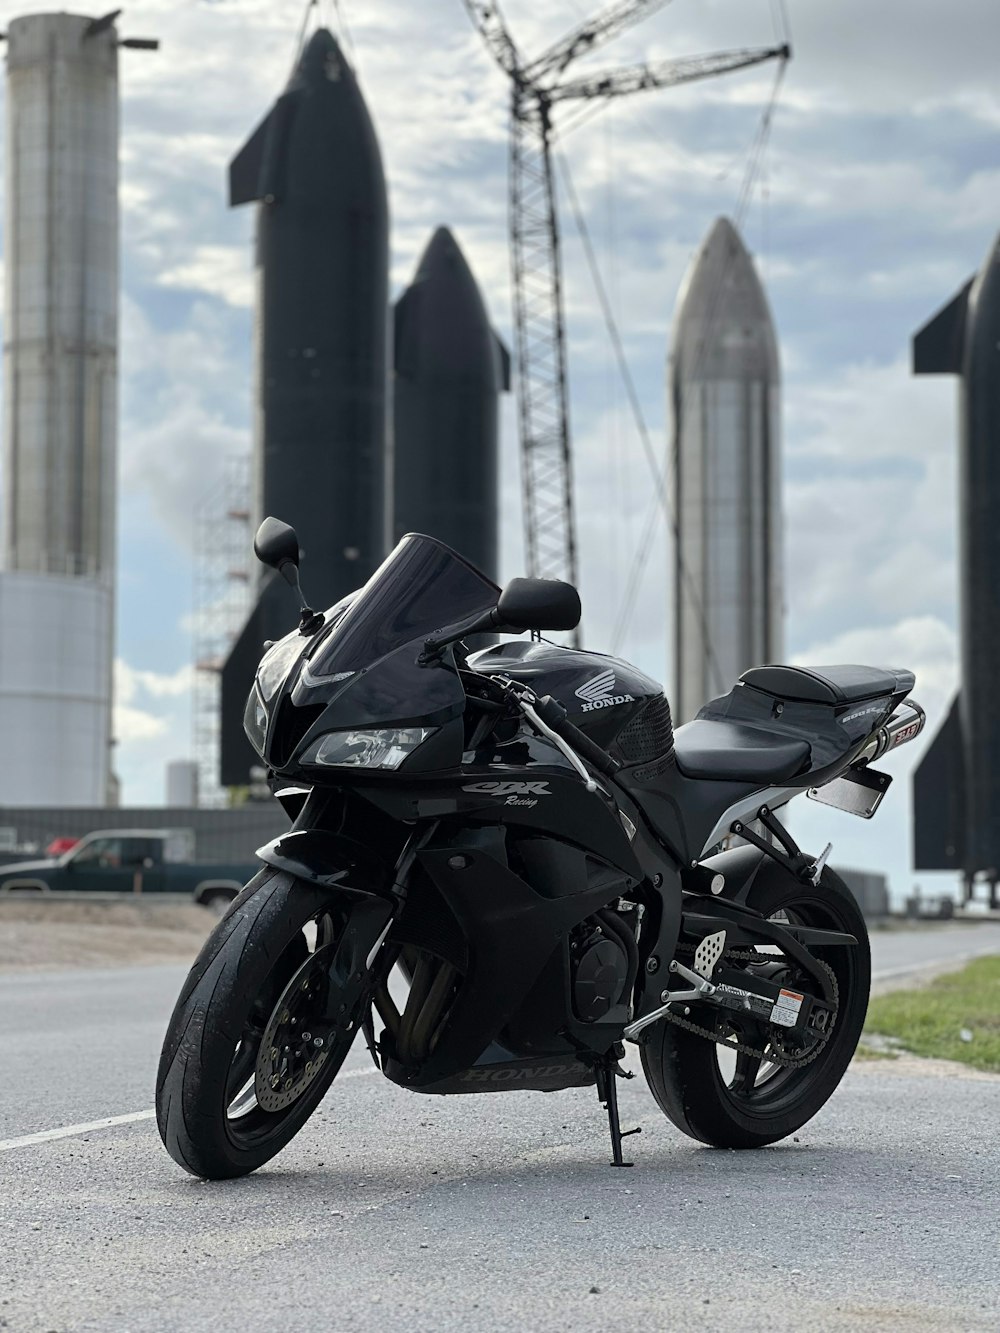 Una motocicleta negra estacionada al costado de la carretera